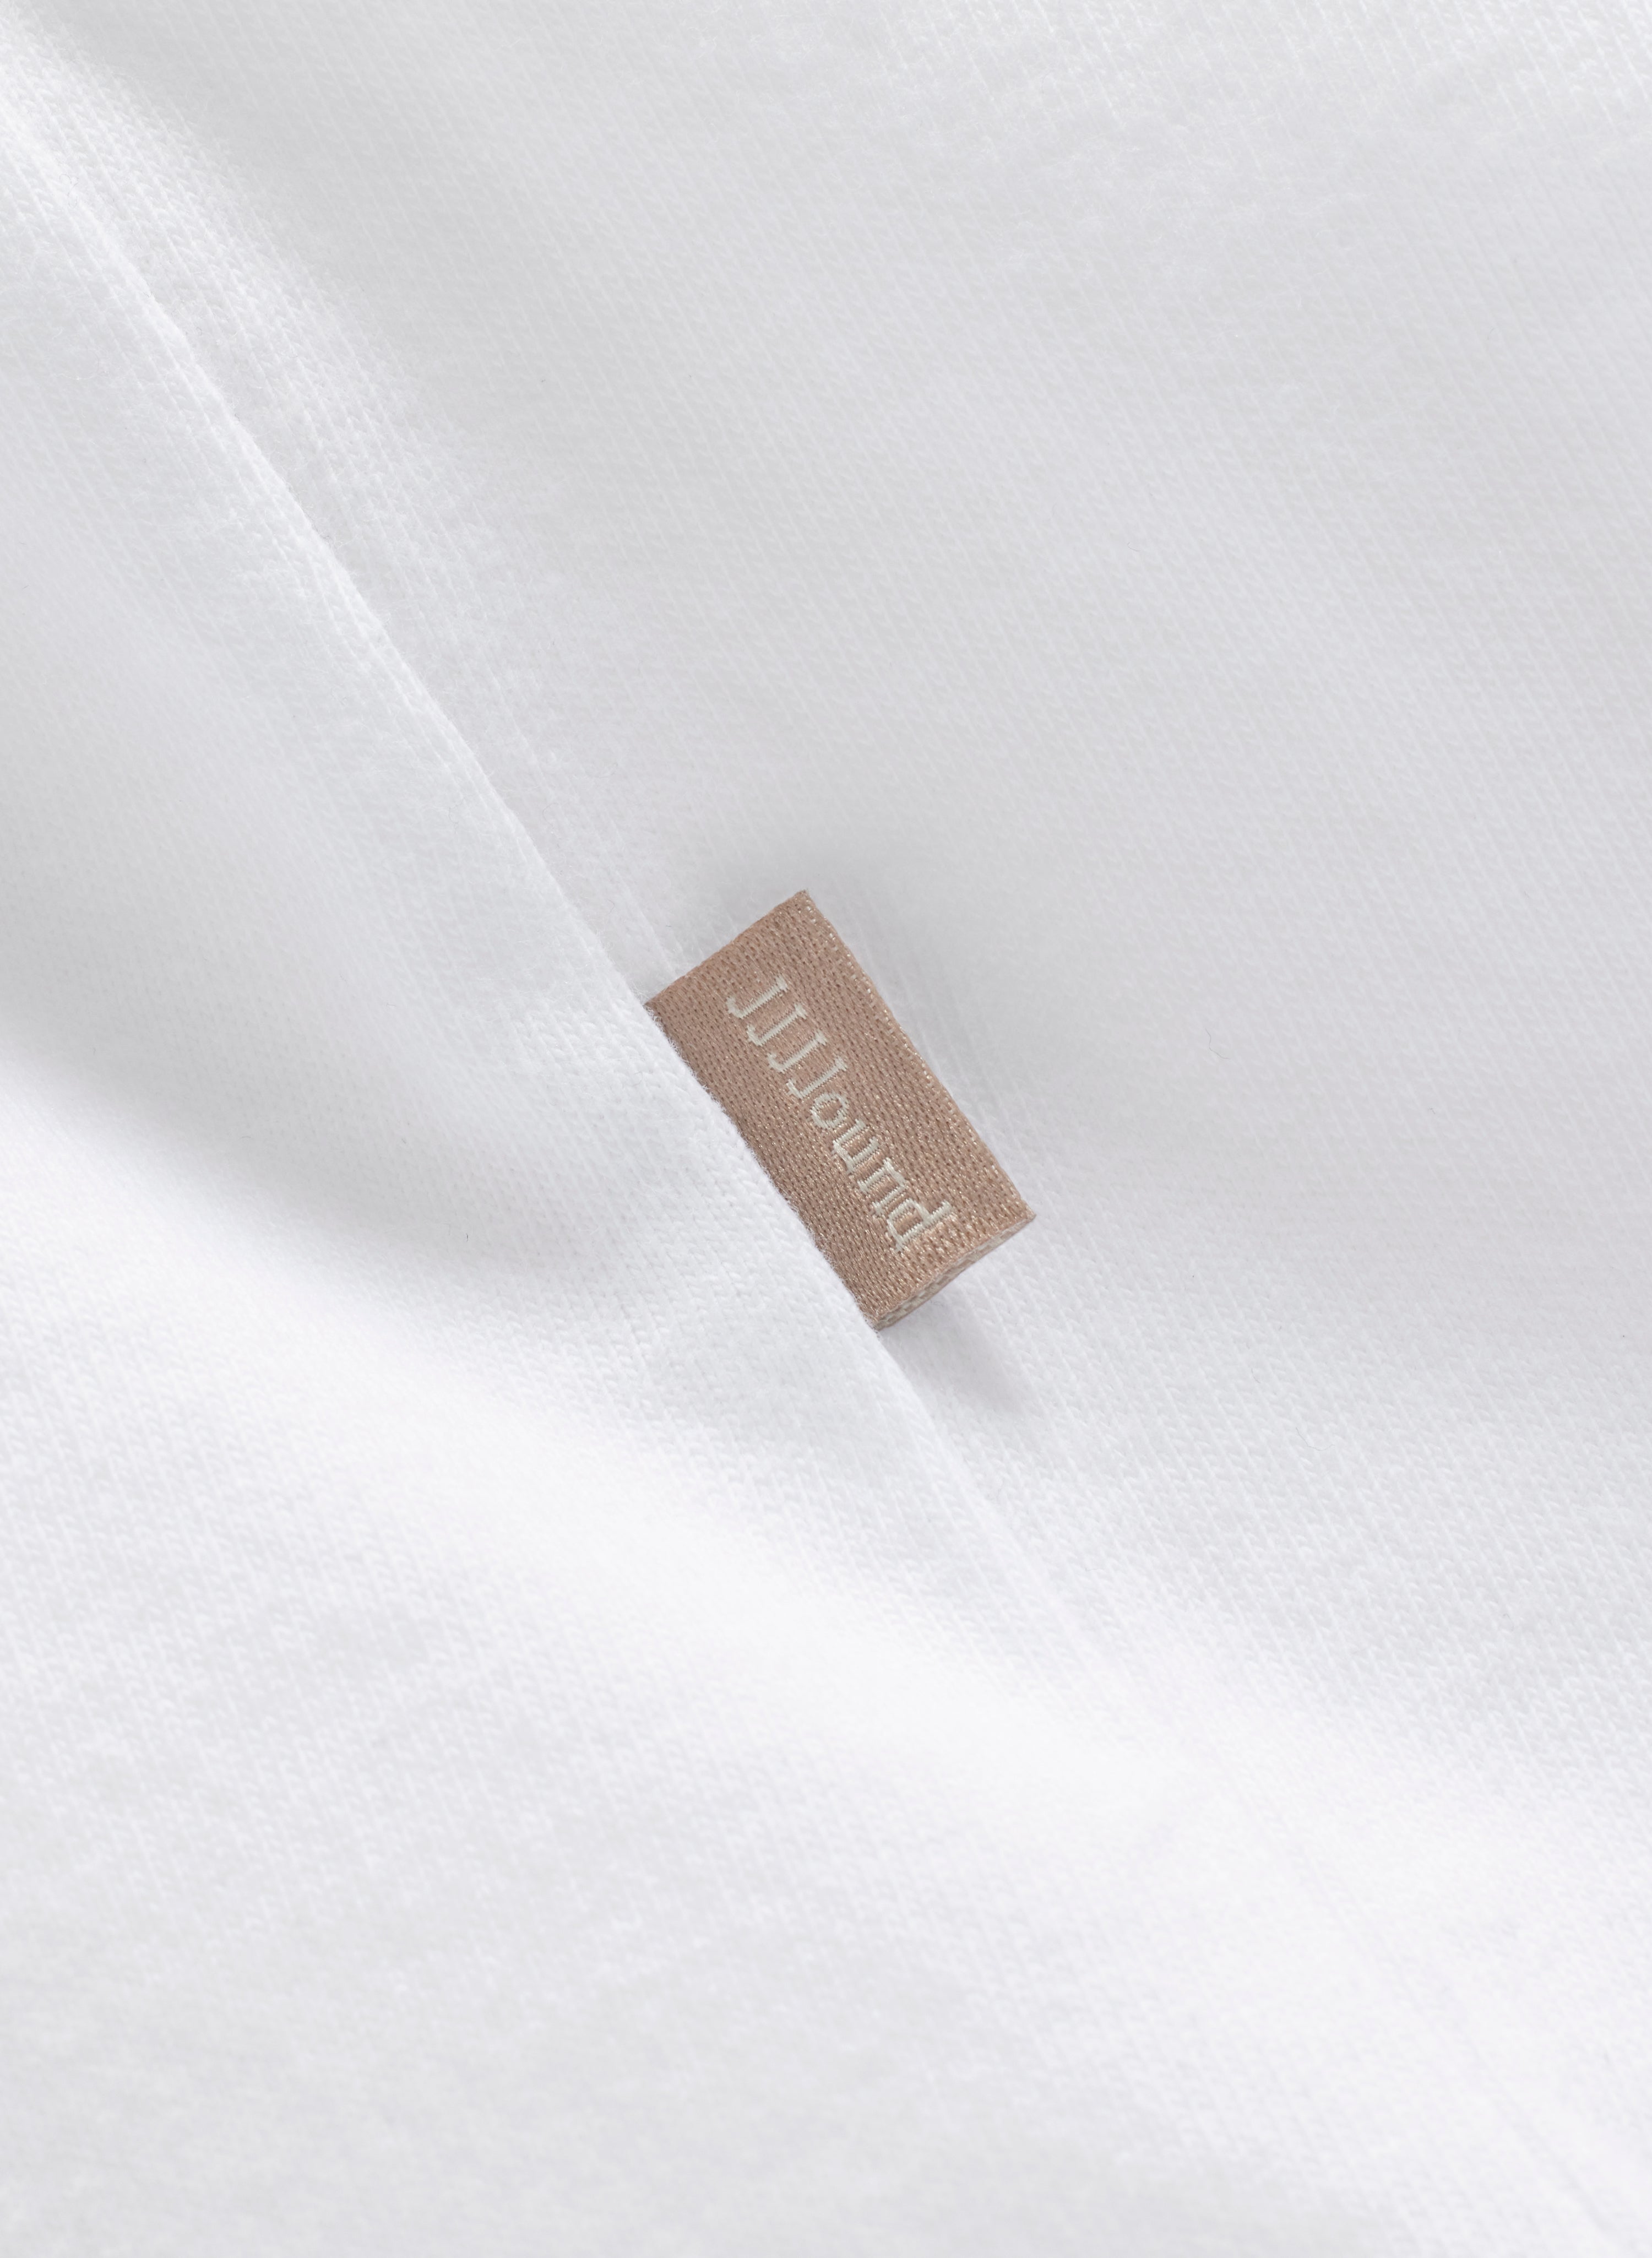 J2000 T-Shirt - White – JJJJound